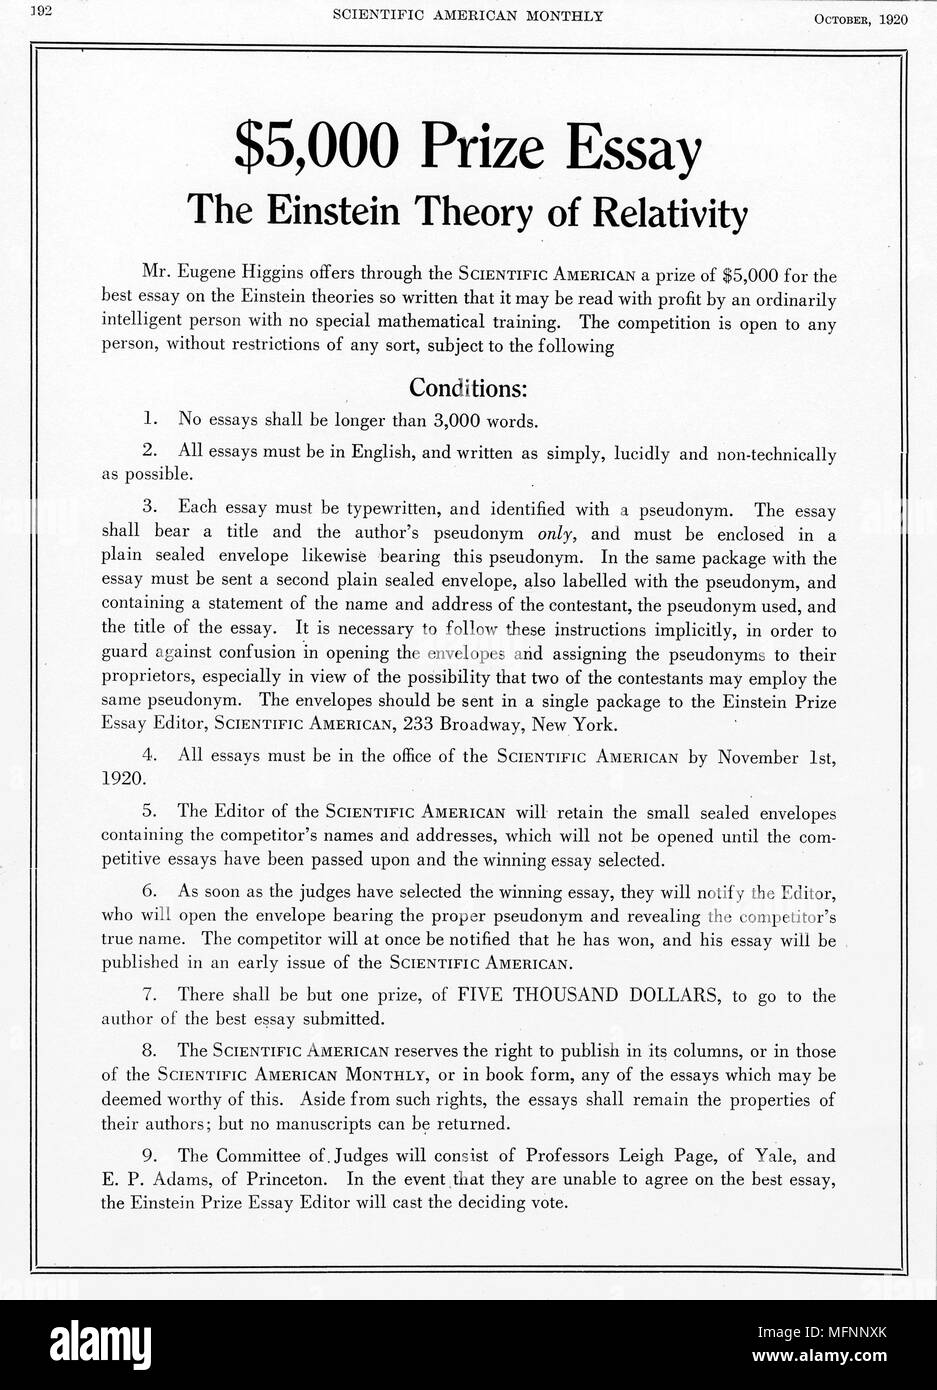 Preis angeboten in Scientific American, New York, Oktober, 1920, für einen Aufsatz auf Einsteins Relativitätstheorie. Einstein war Reisen in die Vereinigten Staaten zu diesem Zeitpunkt Stockfoto